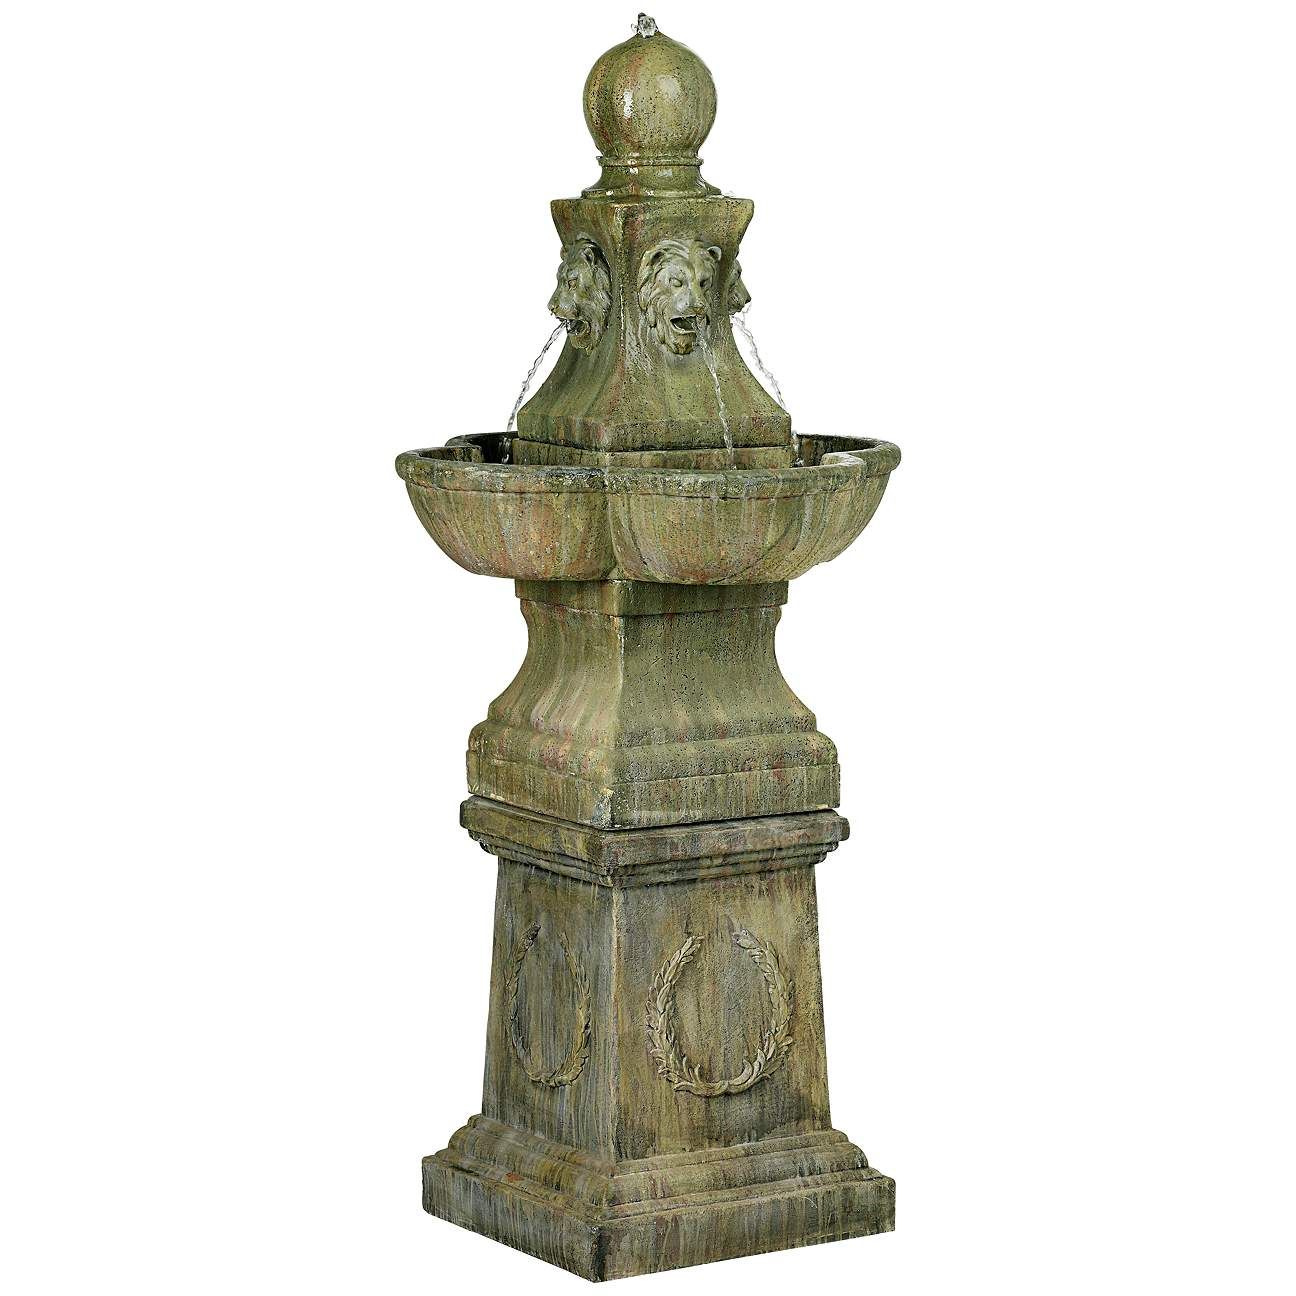 Tuscan Garden Pedestal 54" High Outdoor Fountain | Lamps Plus